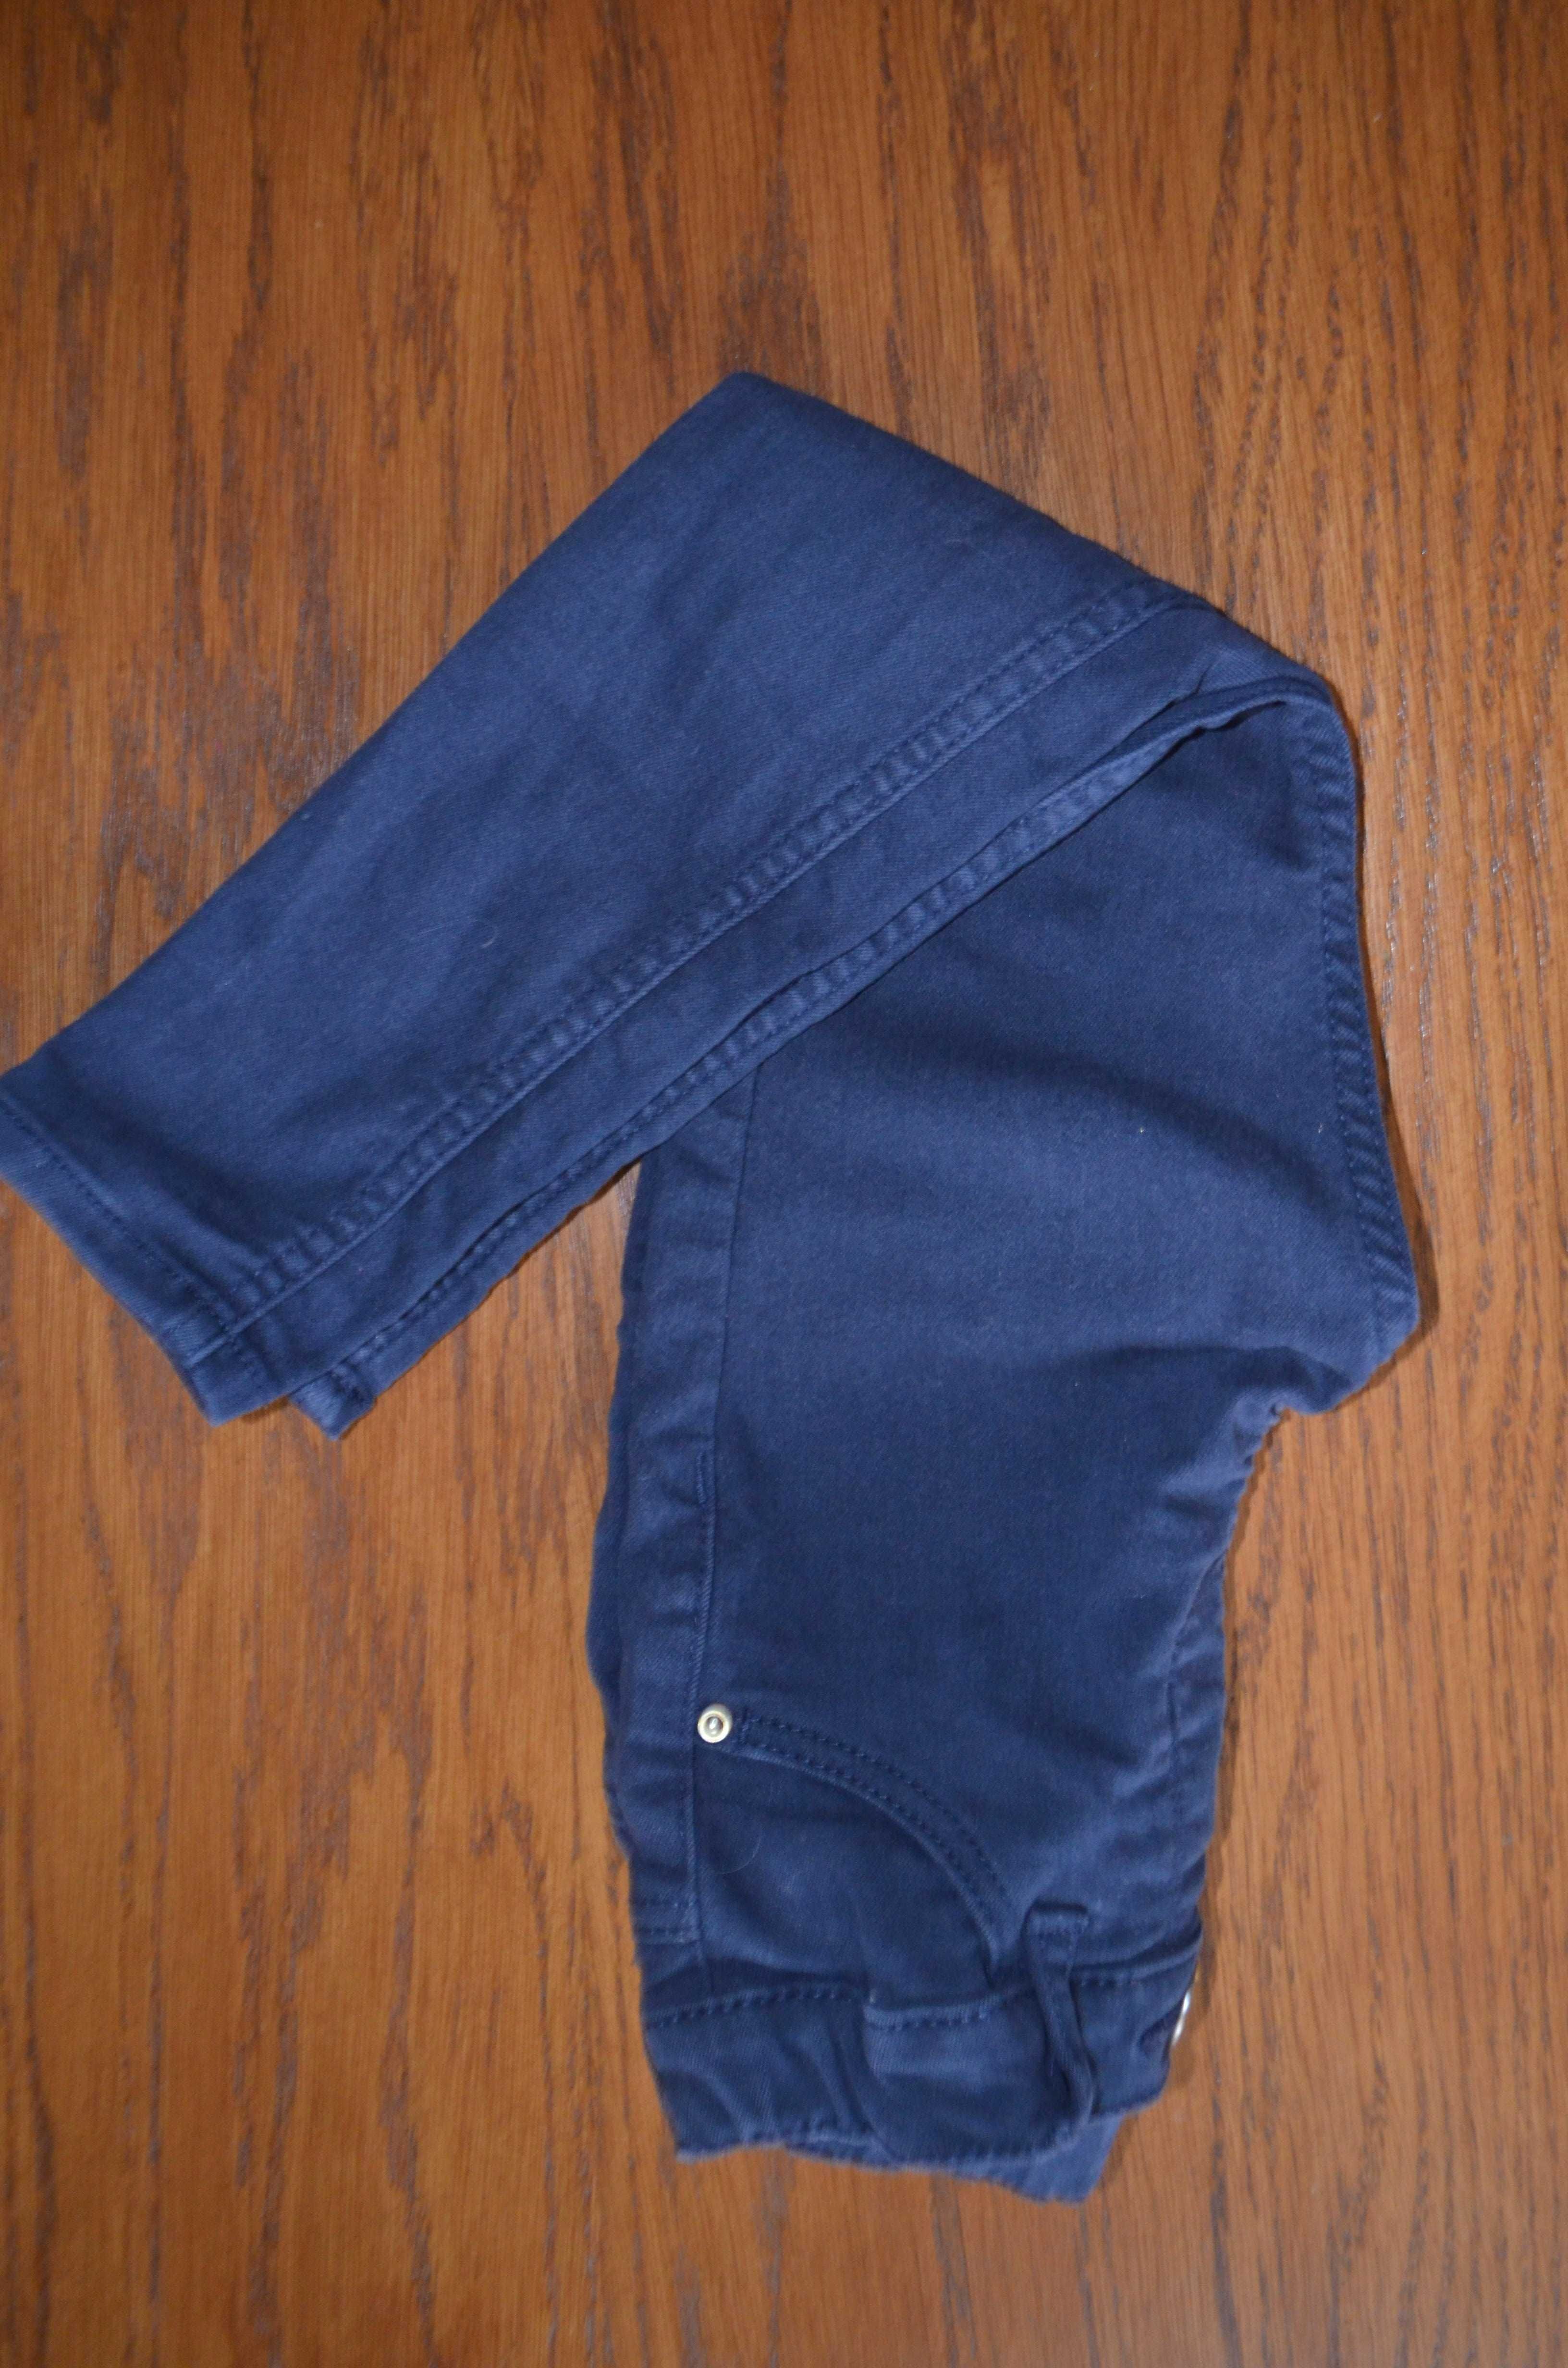 spodnie legginsy dla dziewczynki H&M 104 cm